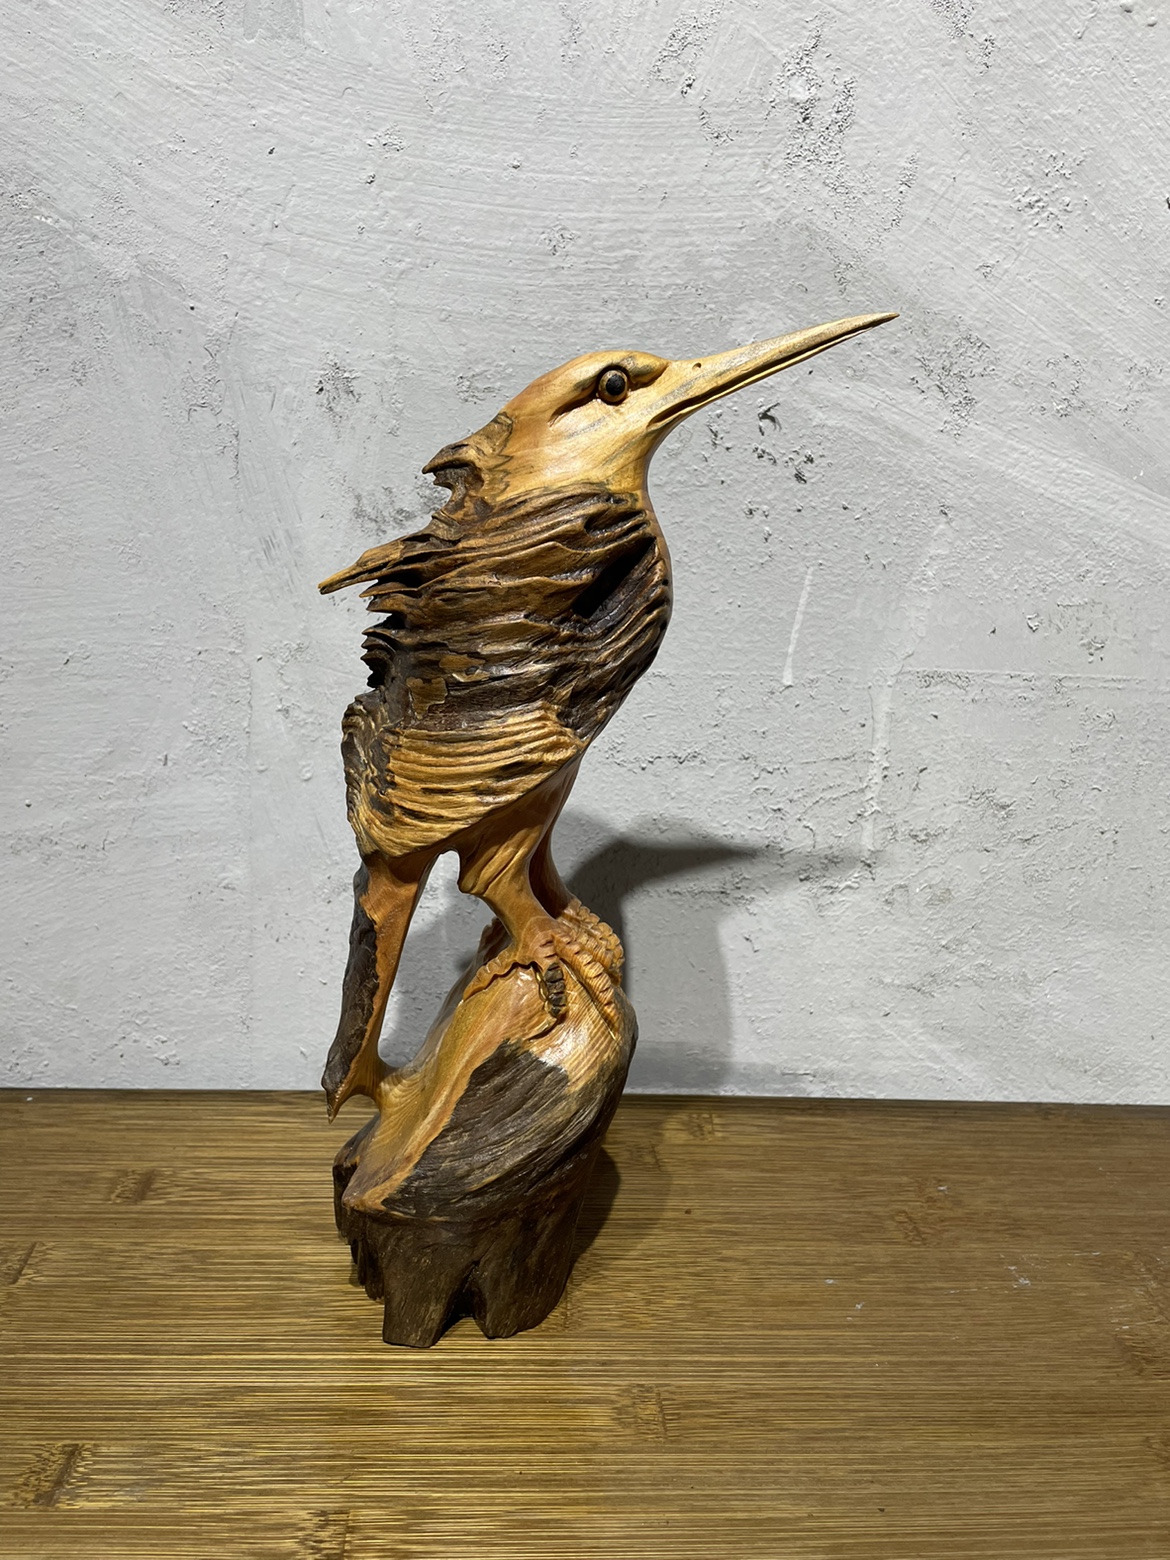 木雕動物擺件天然木質藝術風格獨特禮物純手工製作限量珍藏